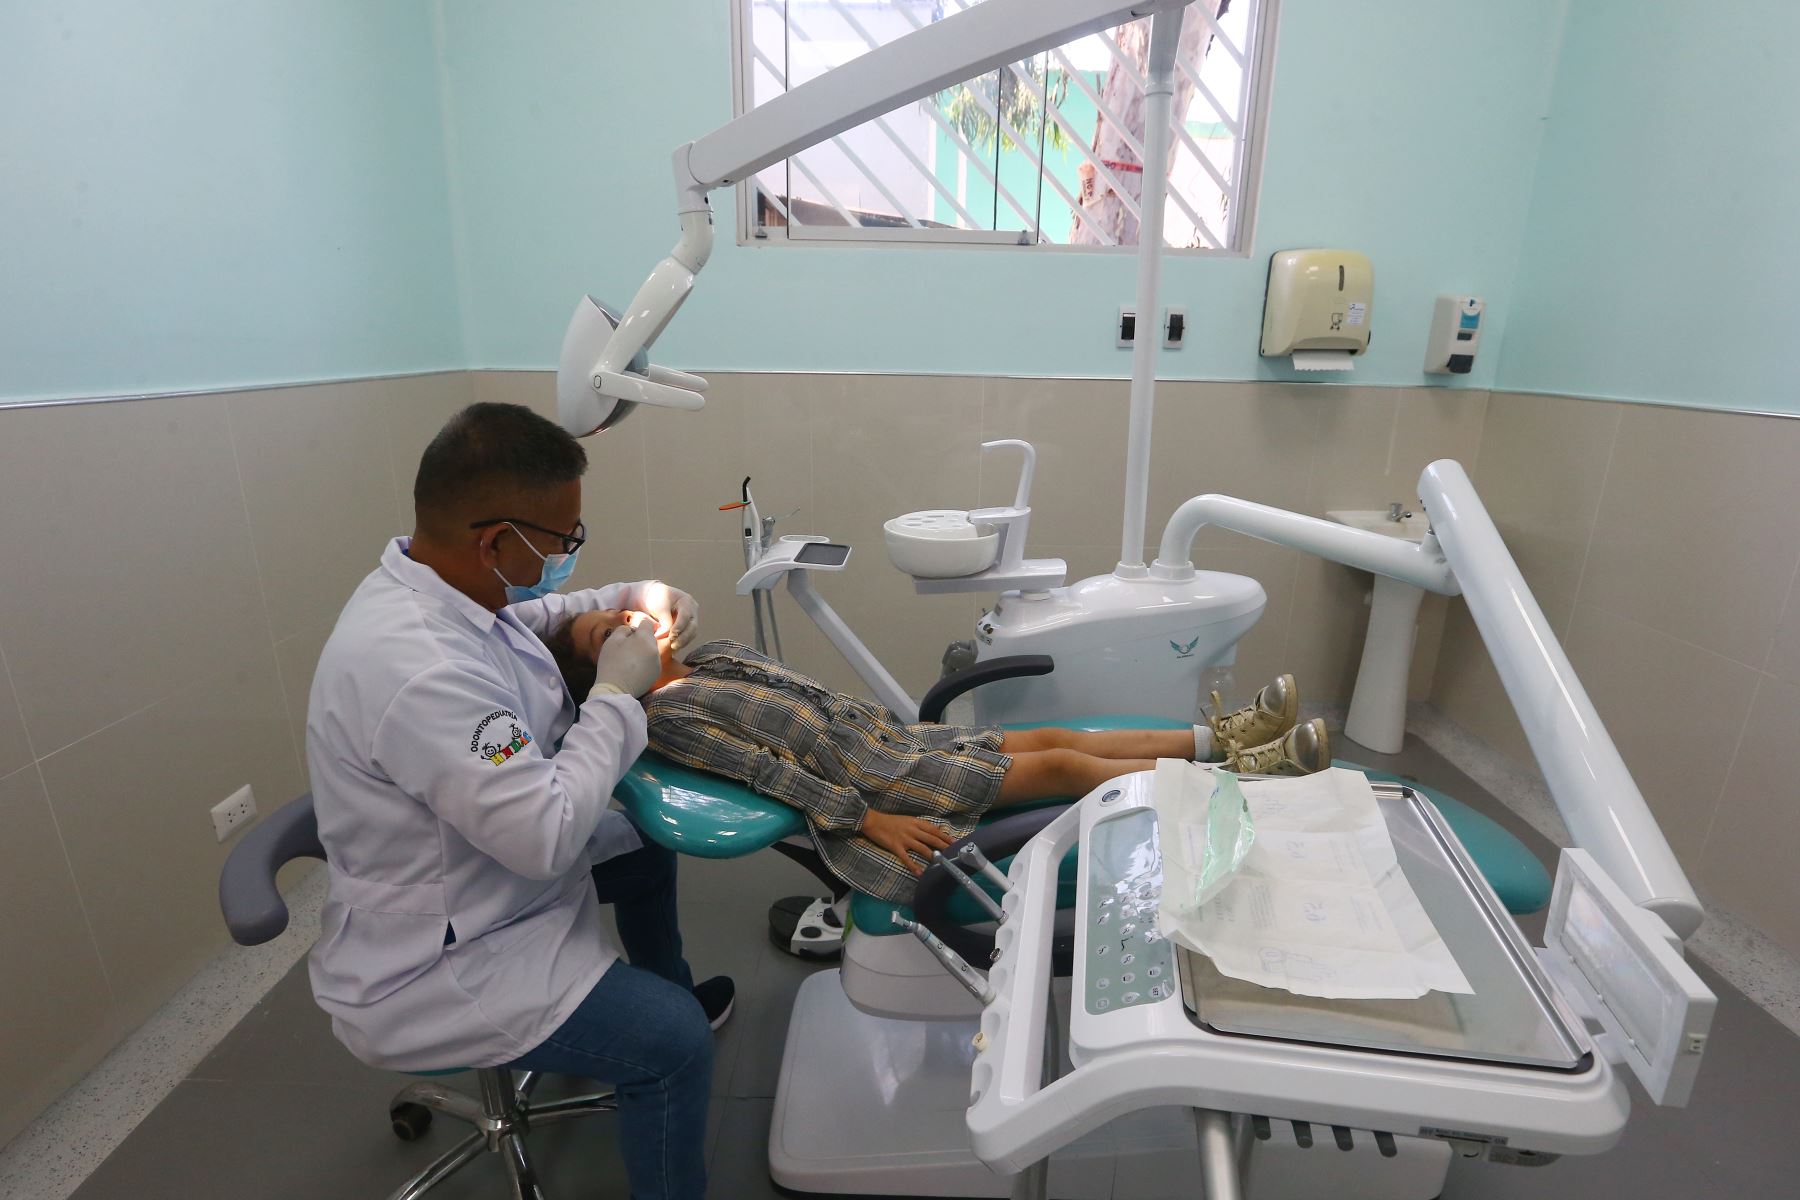 Departamento de Odontoestomatología atenderá a 10 mil pacientes al año. Foto: ANDINA/Eddy Ramos